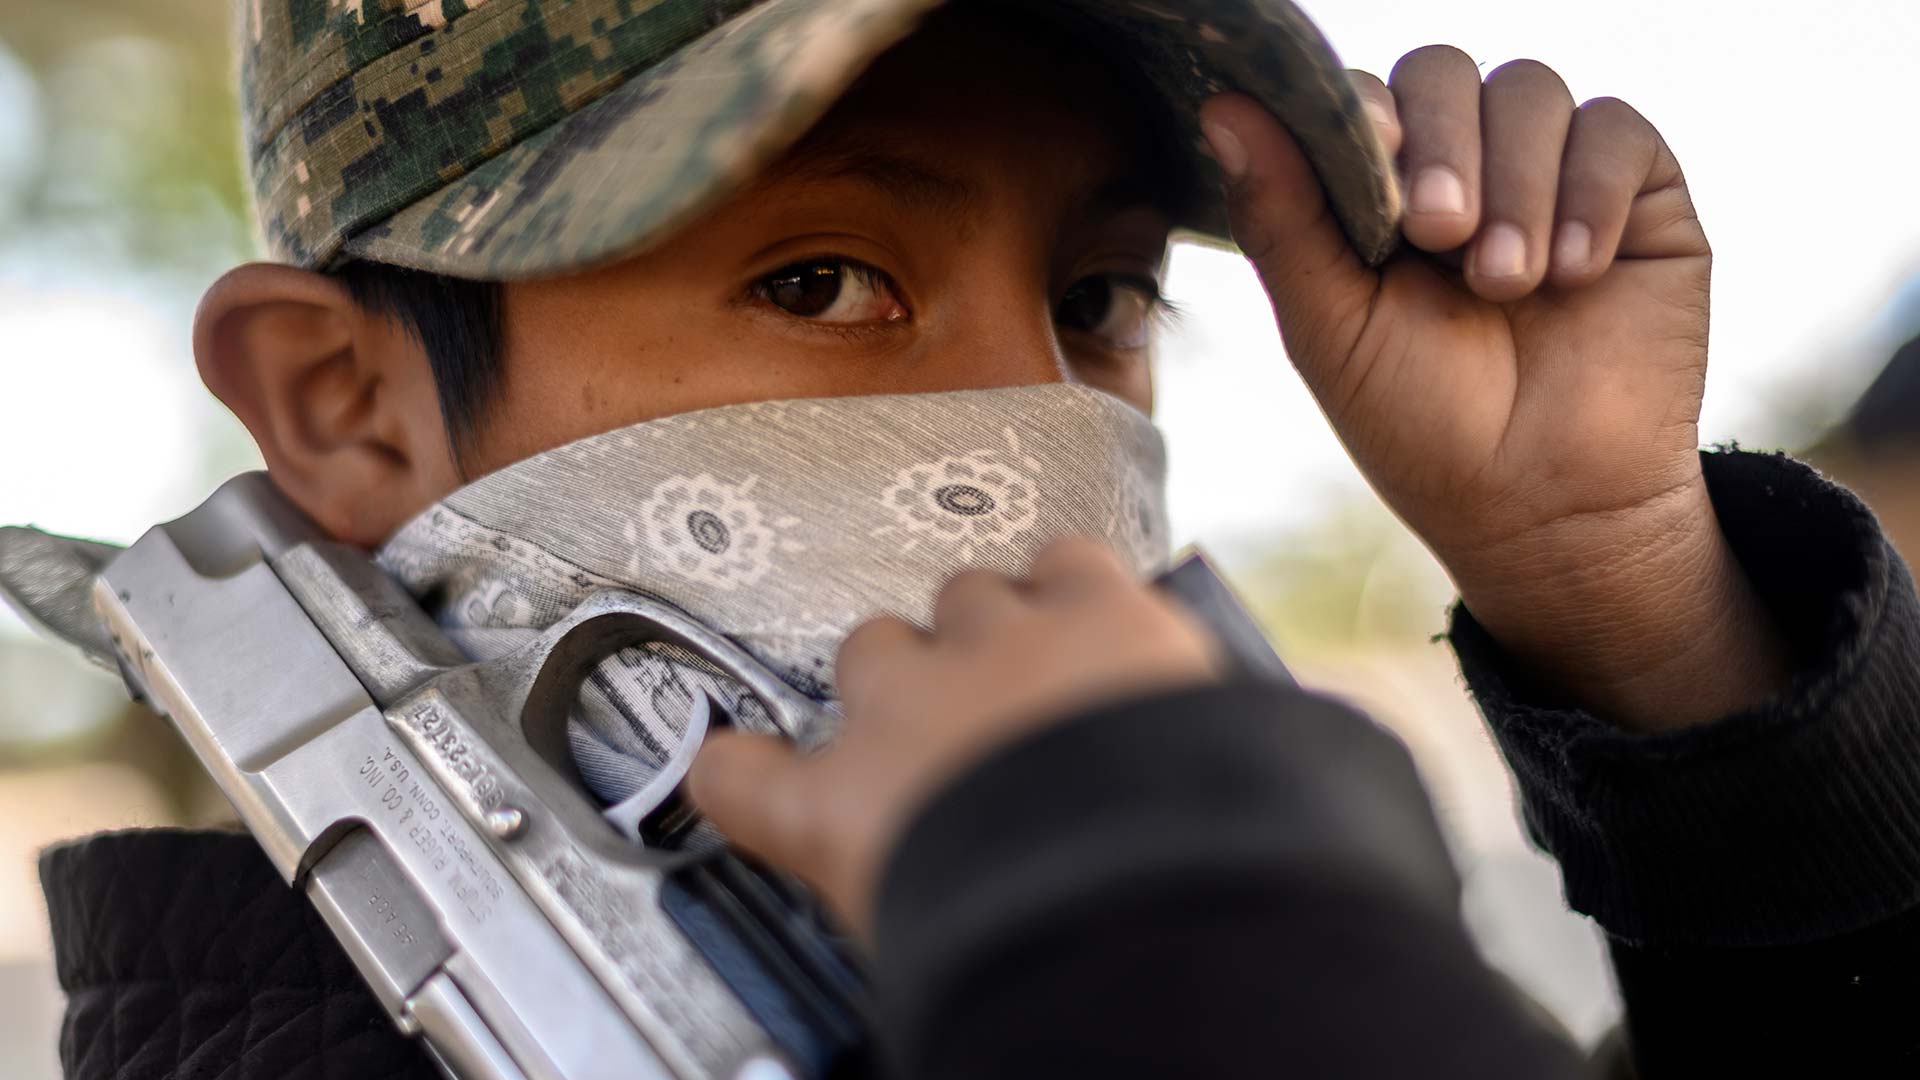 Los niños mexicanos armados para defender a su comunidad de los narcotraficantes